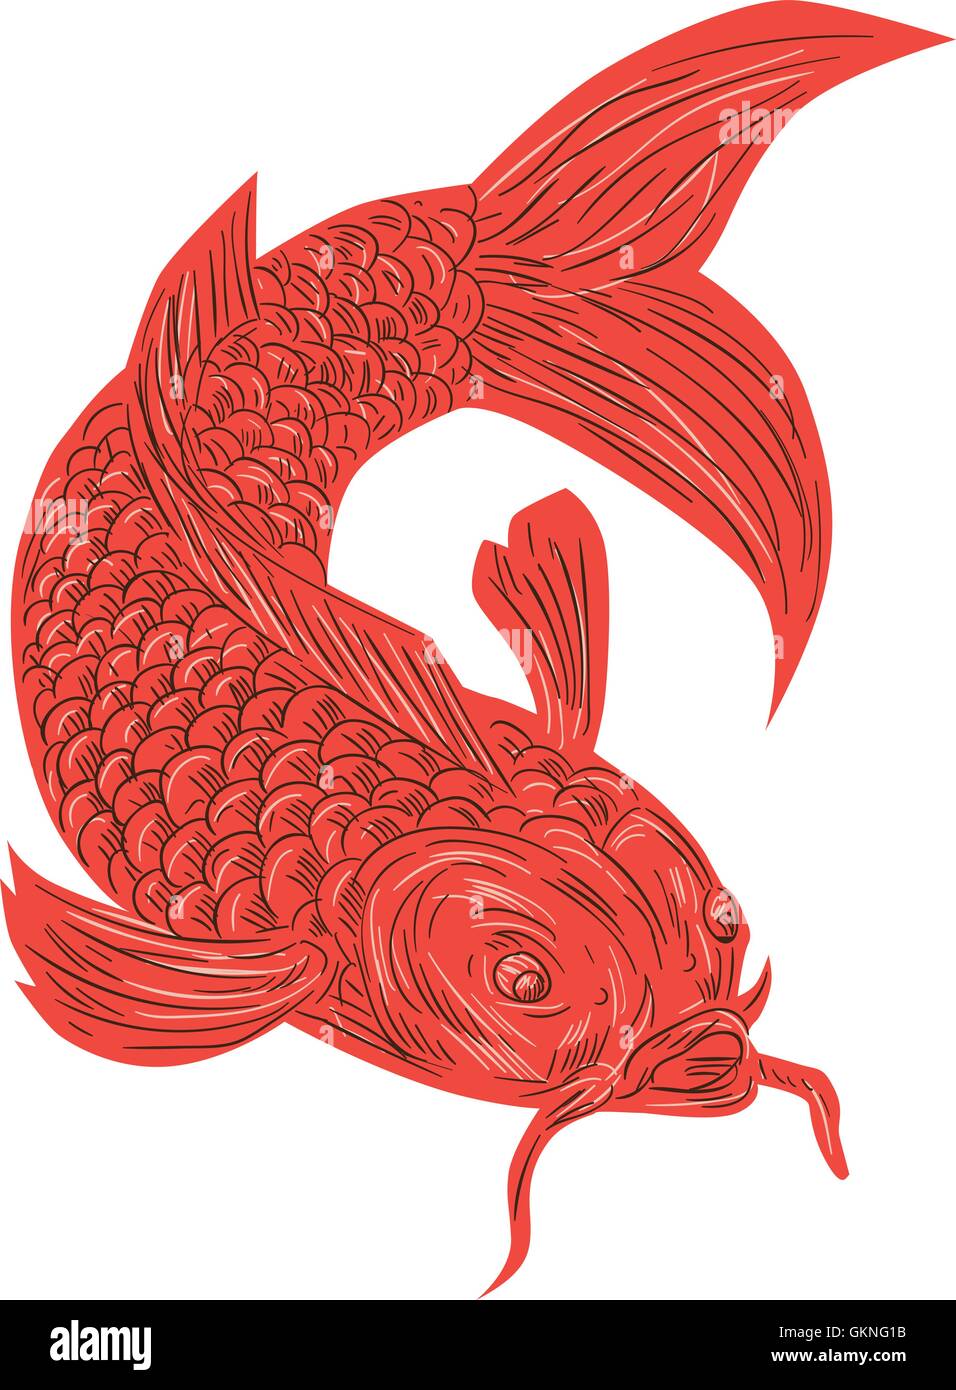 Croquis dessin illustration d'un style koi nishikigoi poissons truite rouge situé sur fond blanc isolé. Illustration de Vecteur